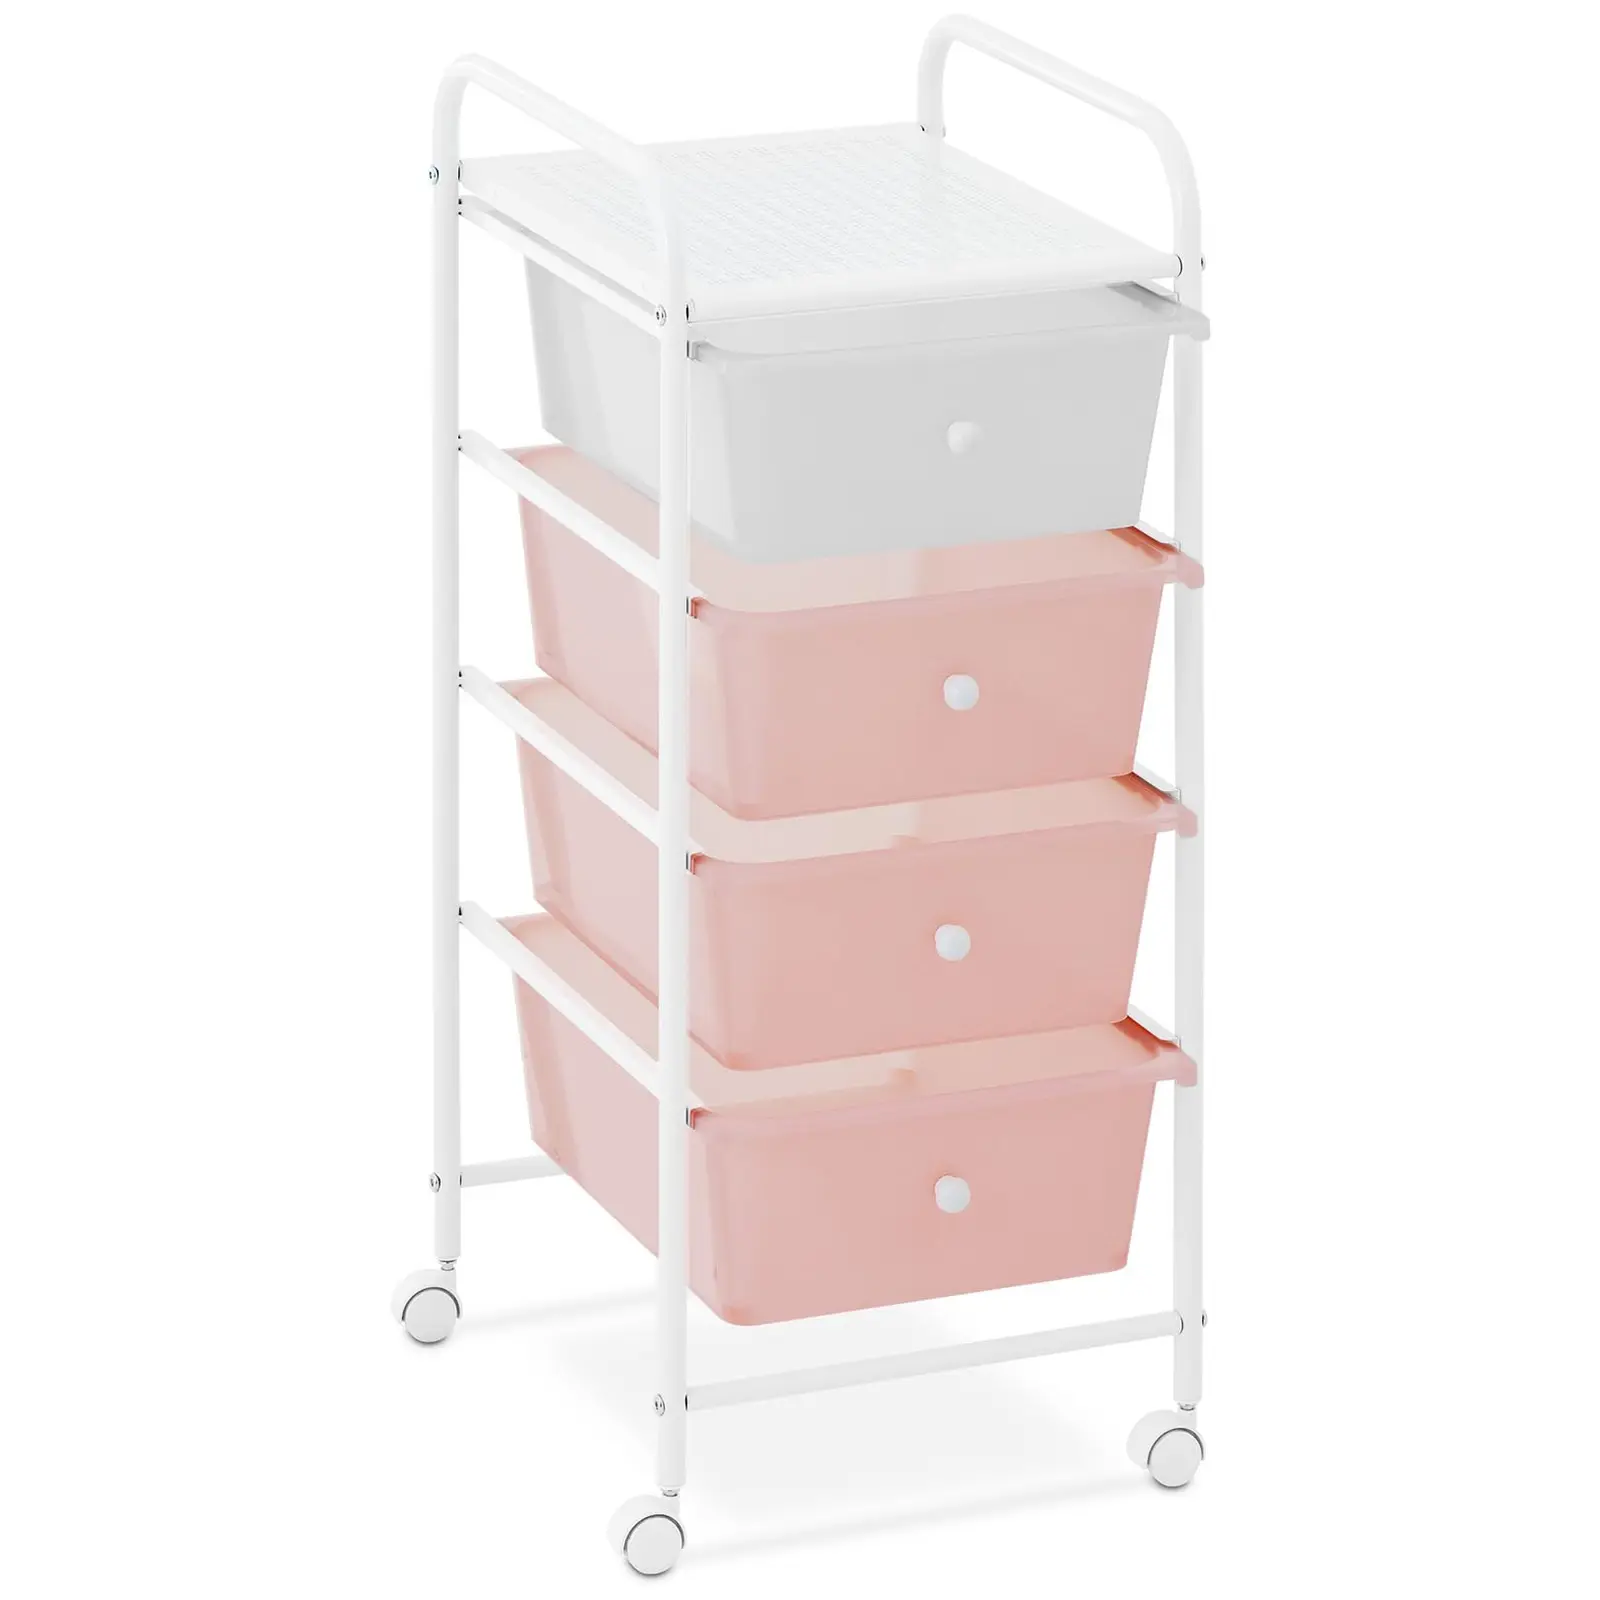 Rullebord med skuffer - 4 skuffer - rosa og hvid